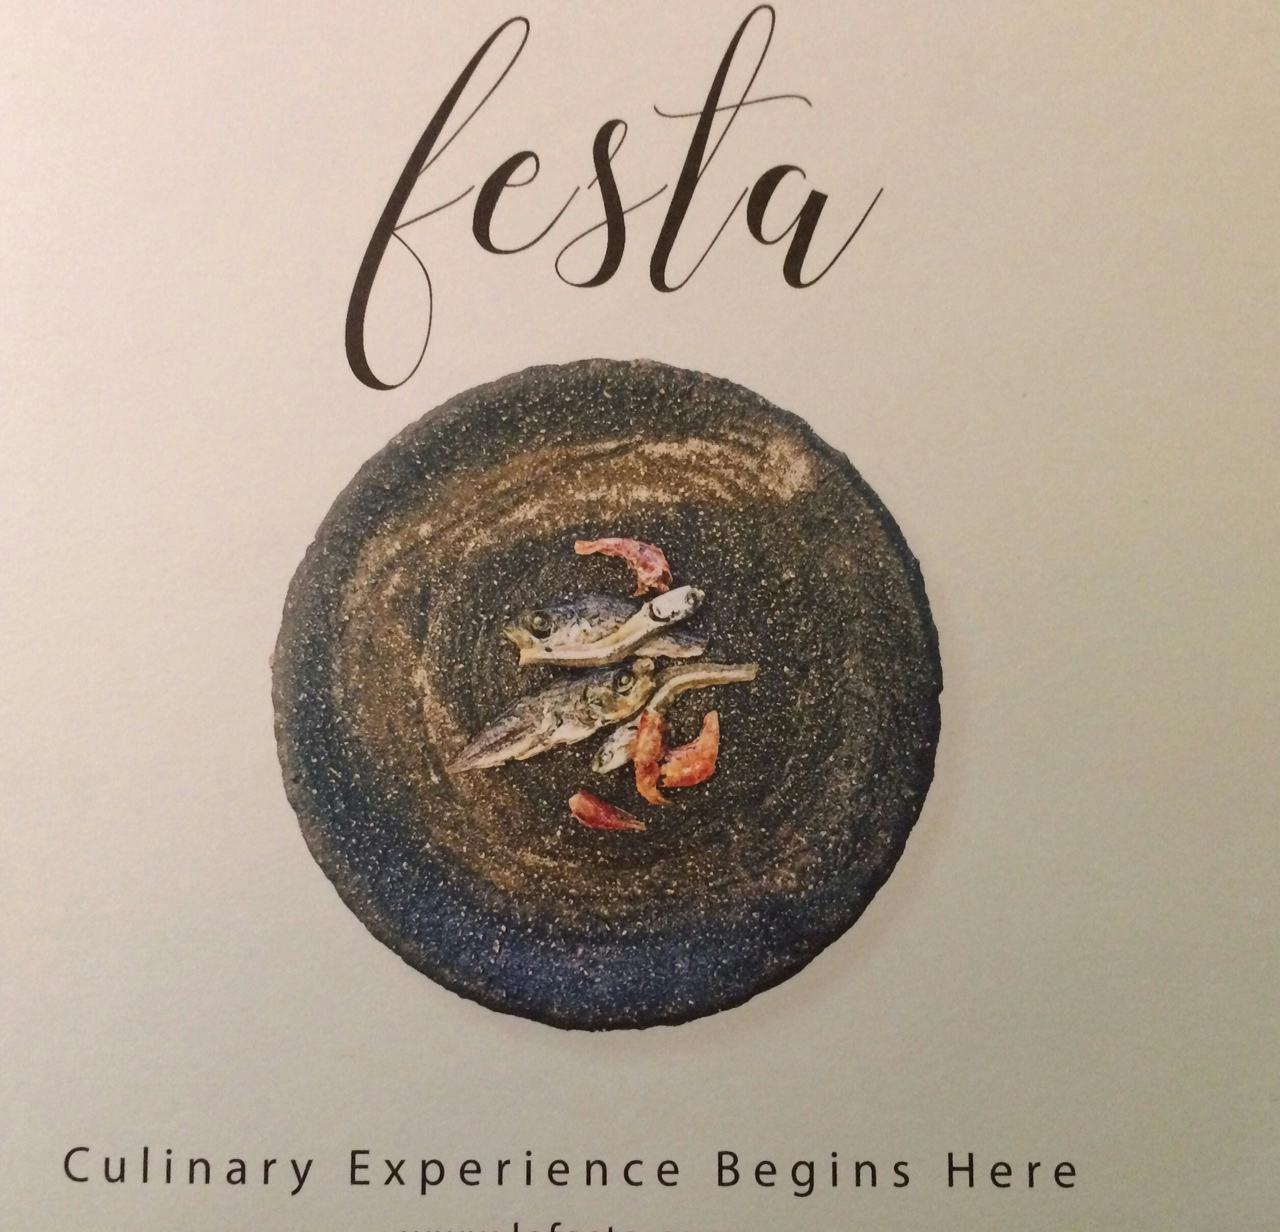 Festa, een community voor chefkoks en culinaire liefhebbers is gelanceerd